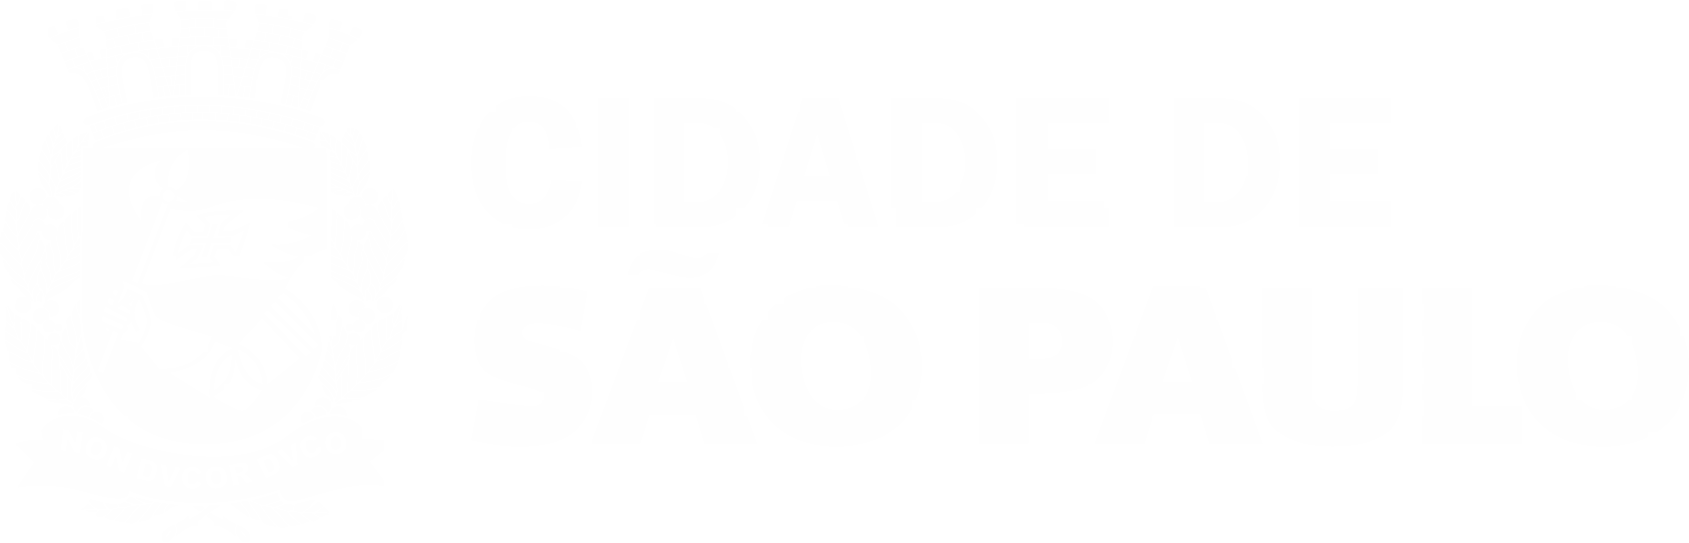 Brasão da Cidade de São Paulo